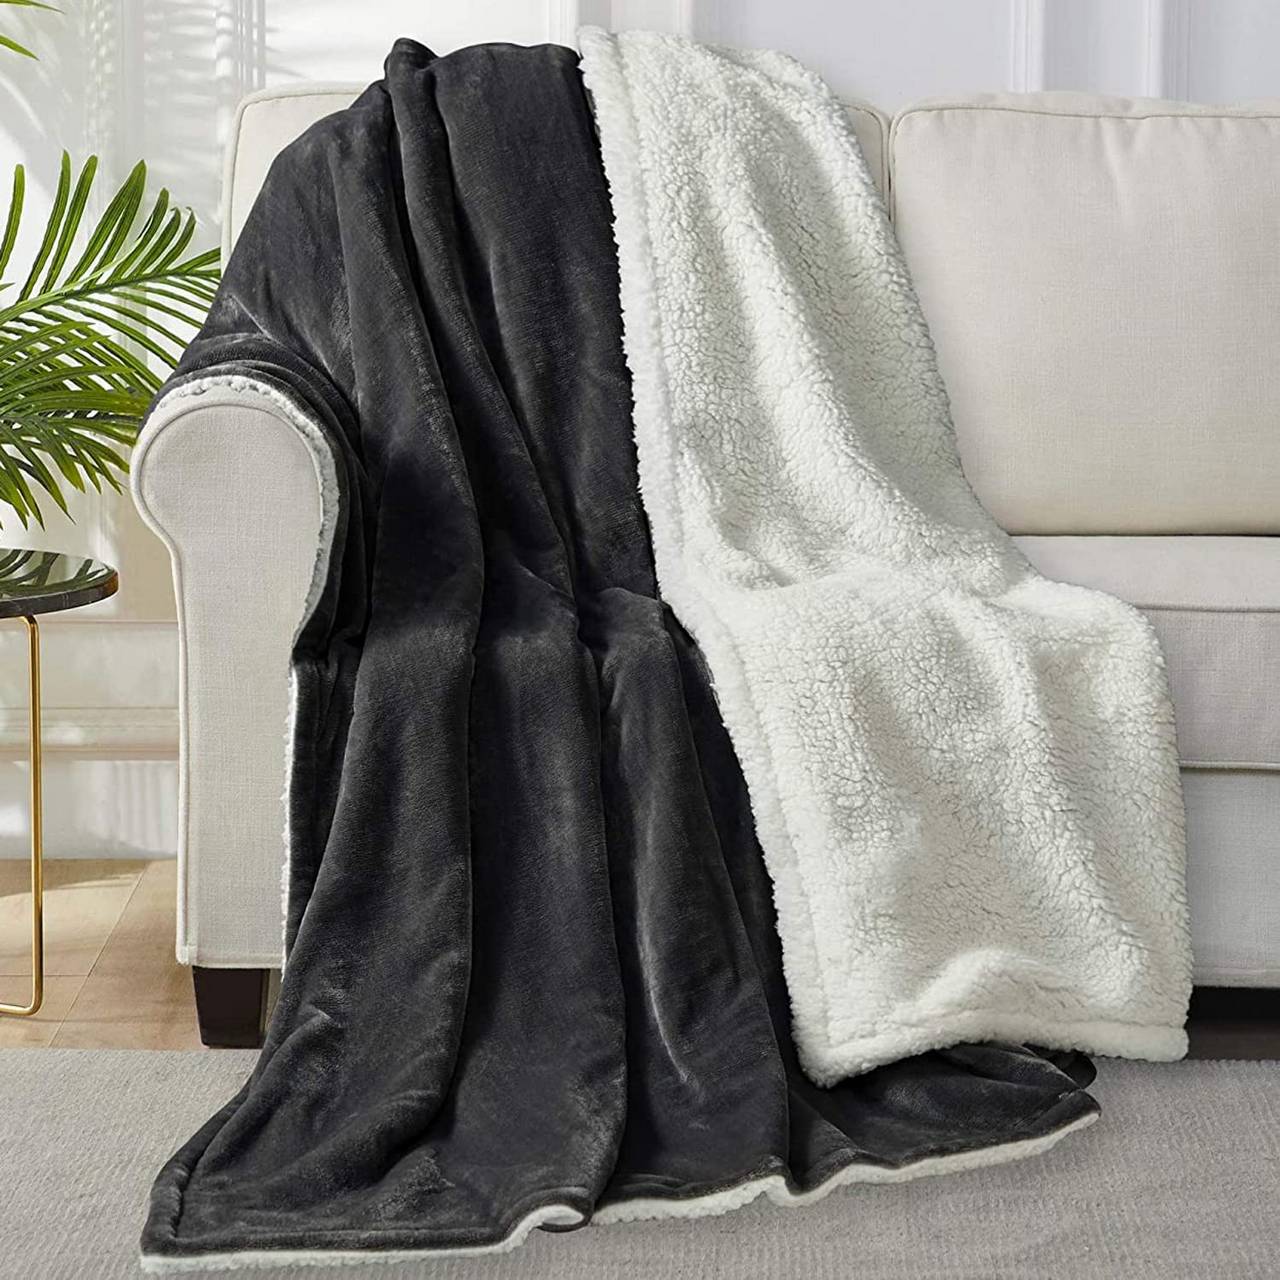  GaoF Mantas de felpa doble gruesa para otoño e invierno, manta  Siesta para sofá, silla, cama, manta para sofá (color caqui, tamaño: 150  78.7 in) : Todo lo demás